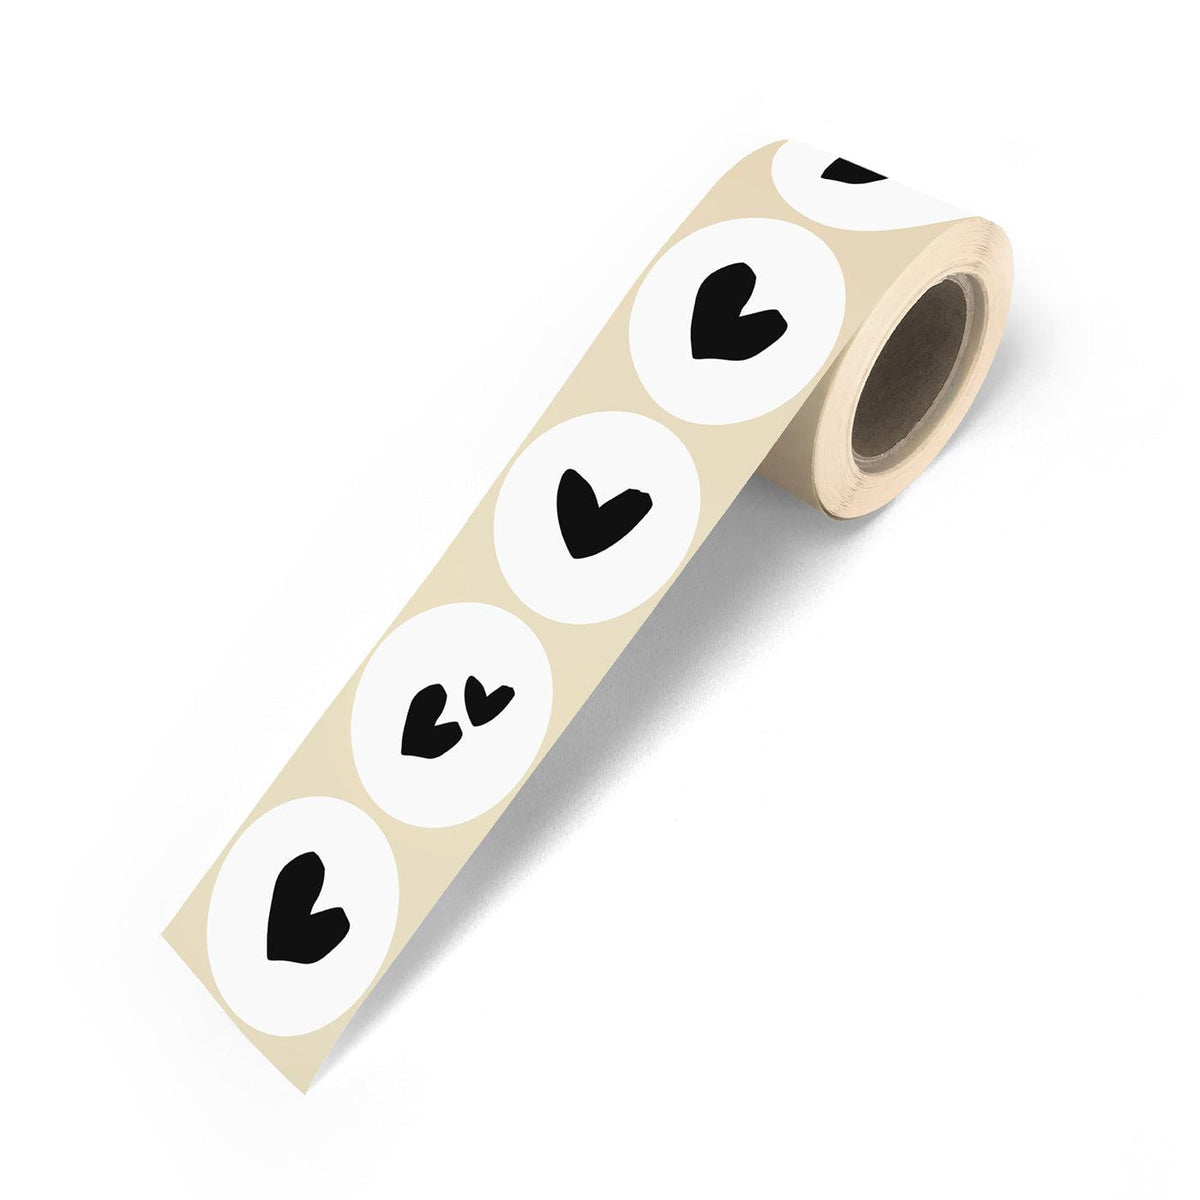 Stickers Solo Hearts wit-zwart 50mm - 10 stuks-Gifts-Kraaltjes van Renate